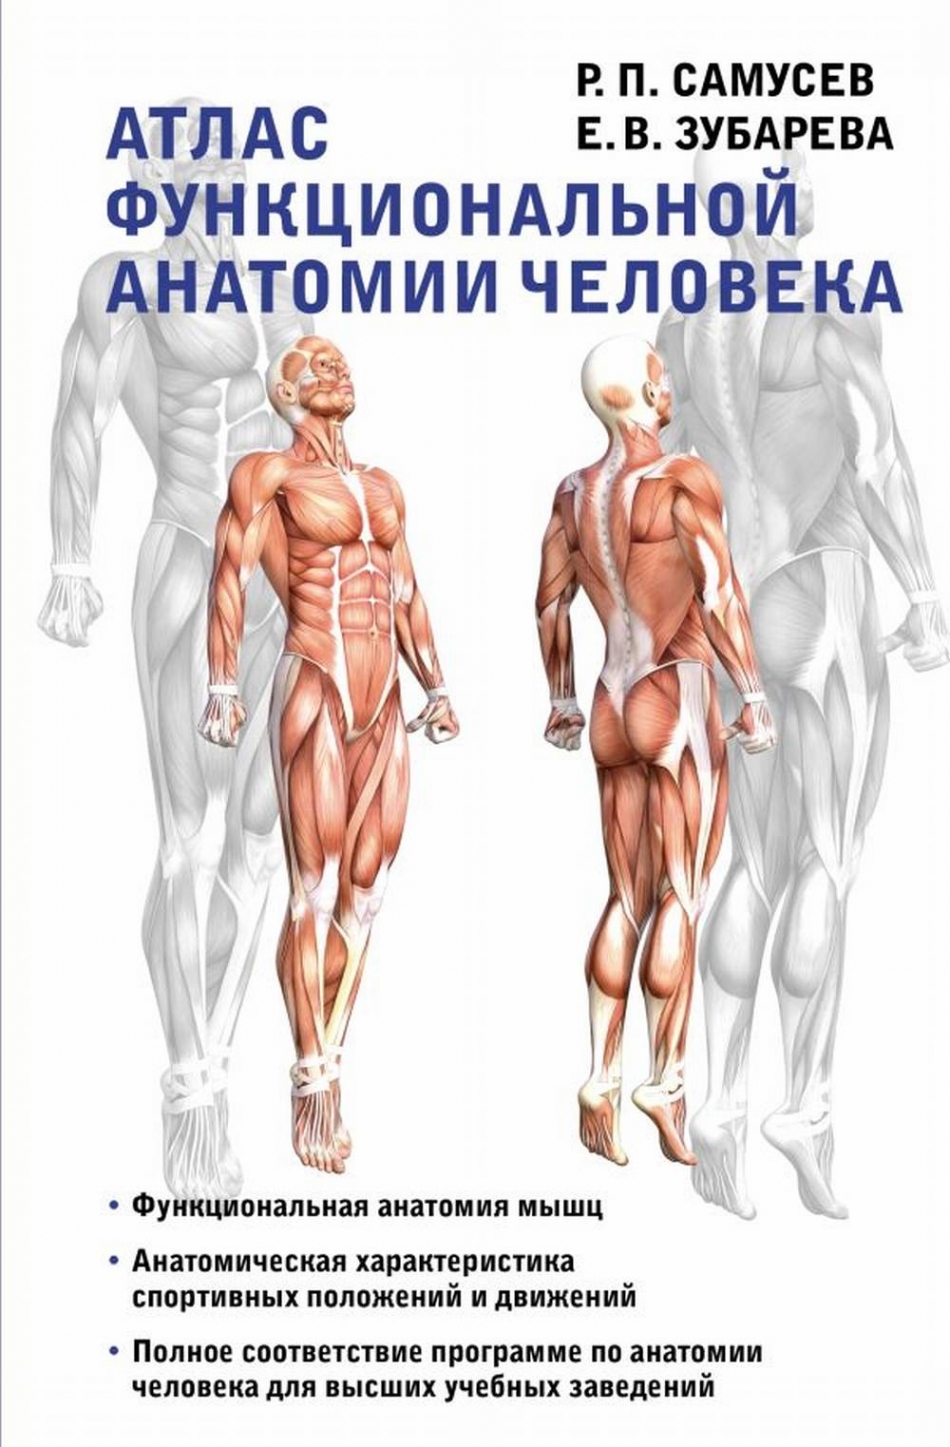 Самусев Р.П., Зубарева Е.В. Атлас функциональной анатомии человека 